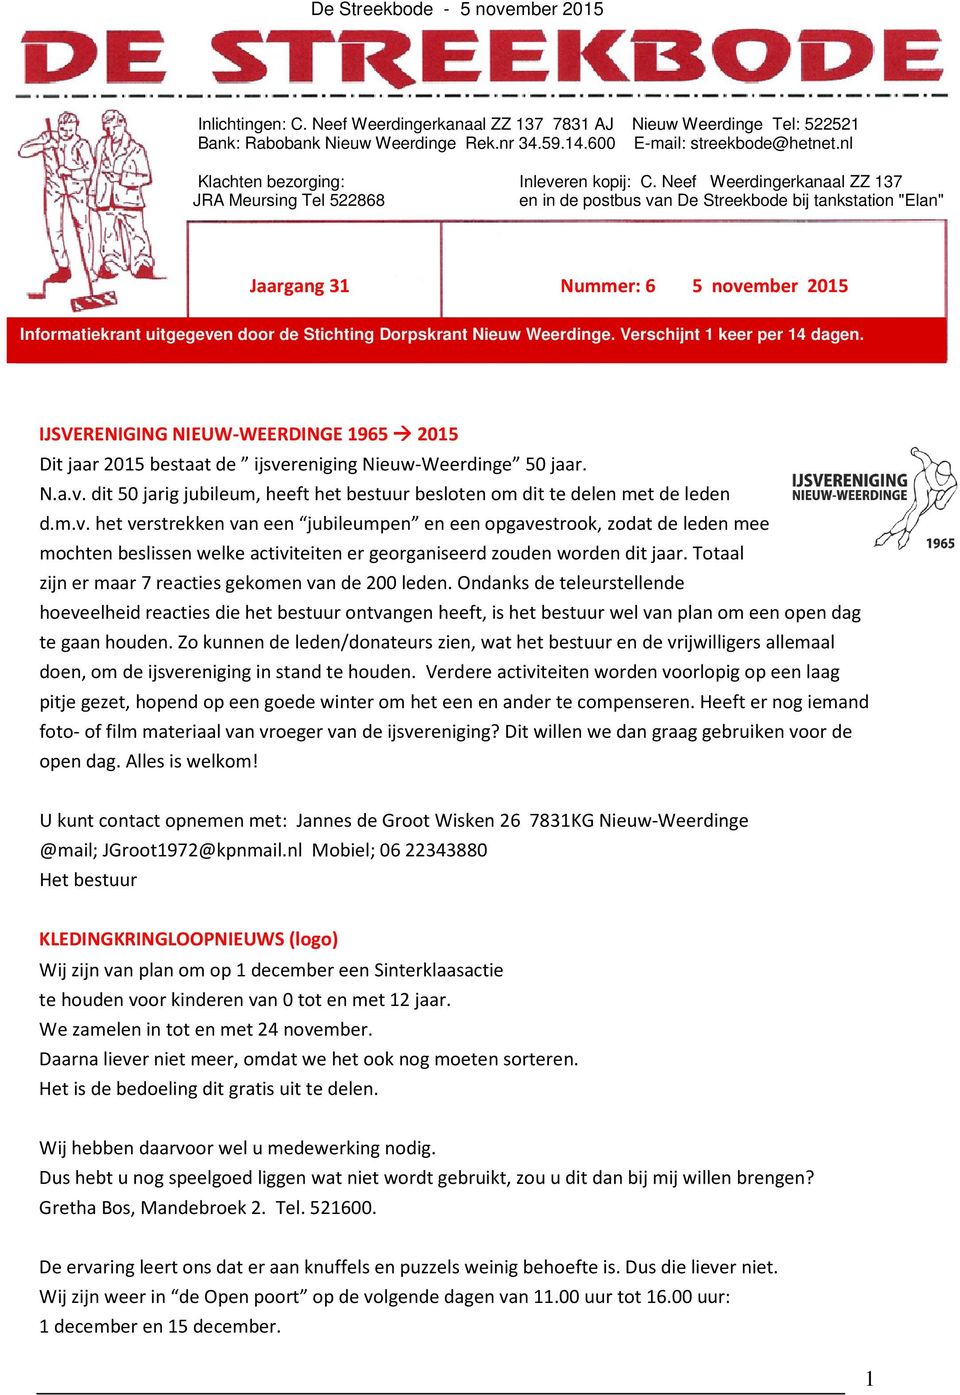 Neef Weerdingerkanaal ZZ 137 JRA Meursing Tel 522868 en in de postbus van De Streekbode bij tankstation "Elan" Jaargang 31 Nummer: 6 5 november 2015 Informatiekrant uitgegeven door de Stichting